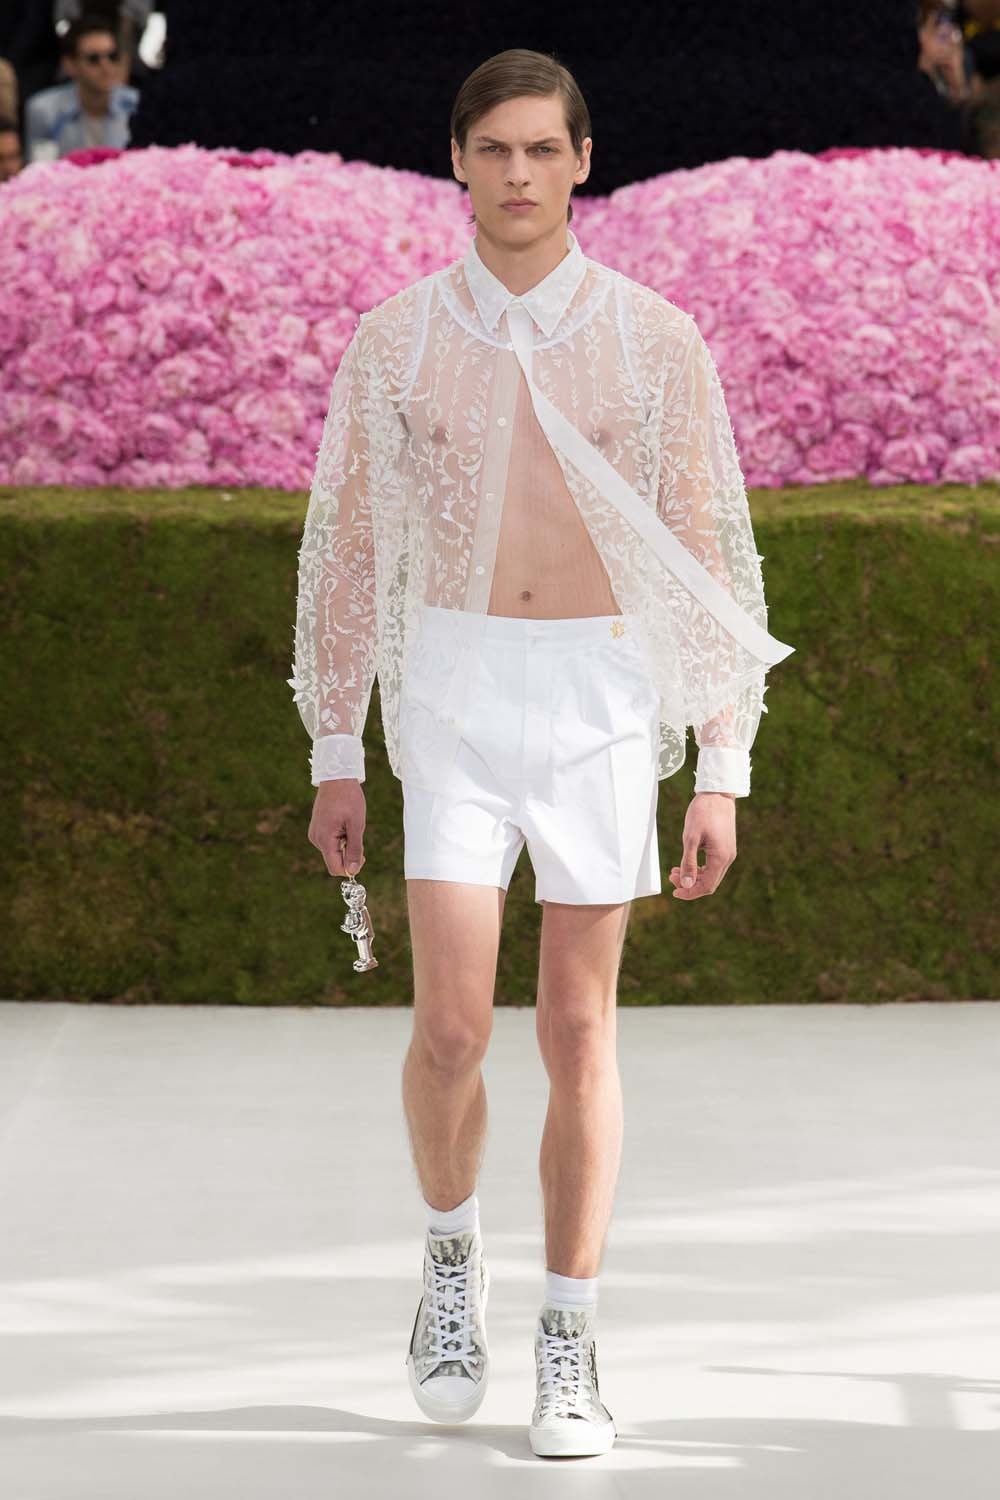 巴黎時裝周 - Dior Homme 2019 春夏系列正式發佈